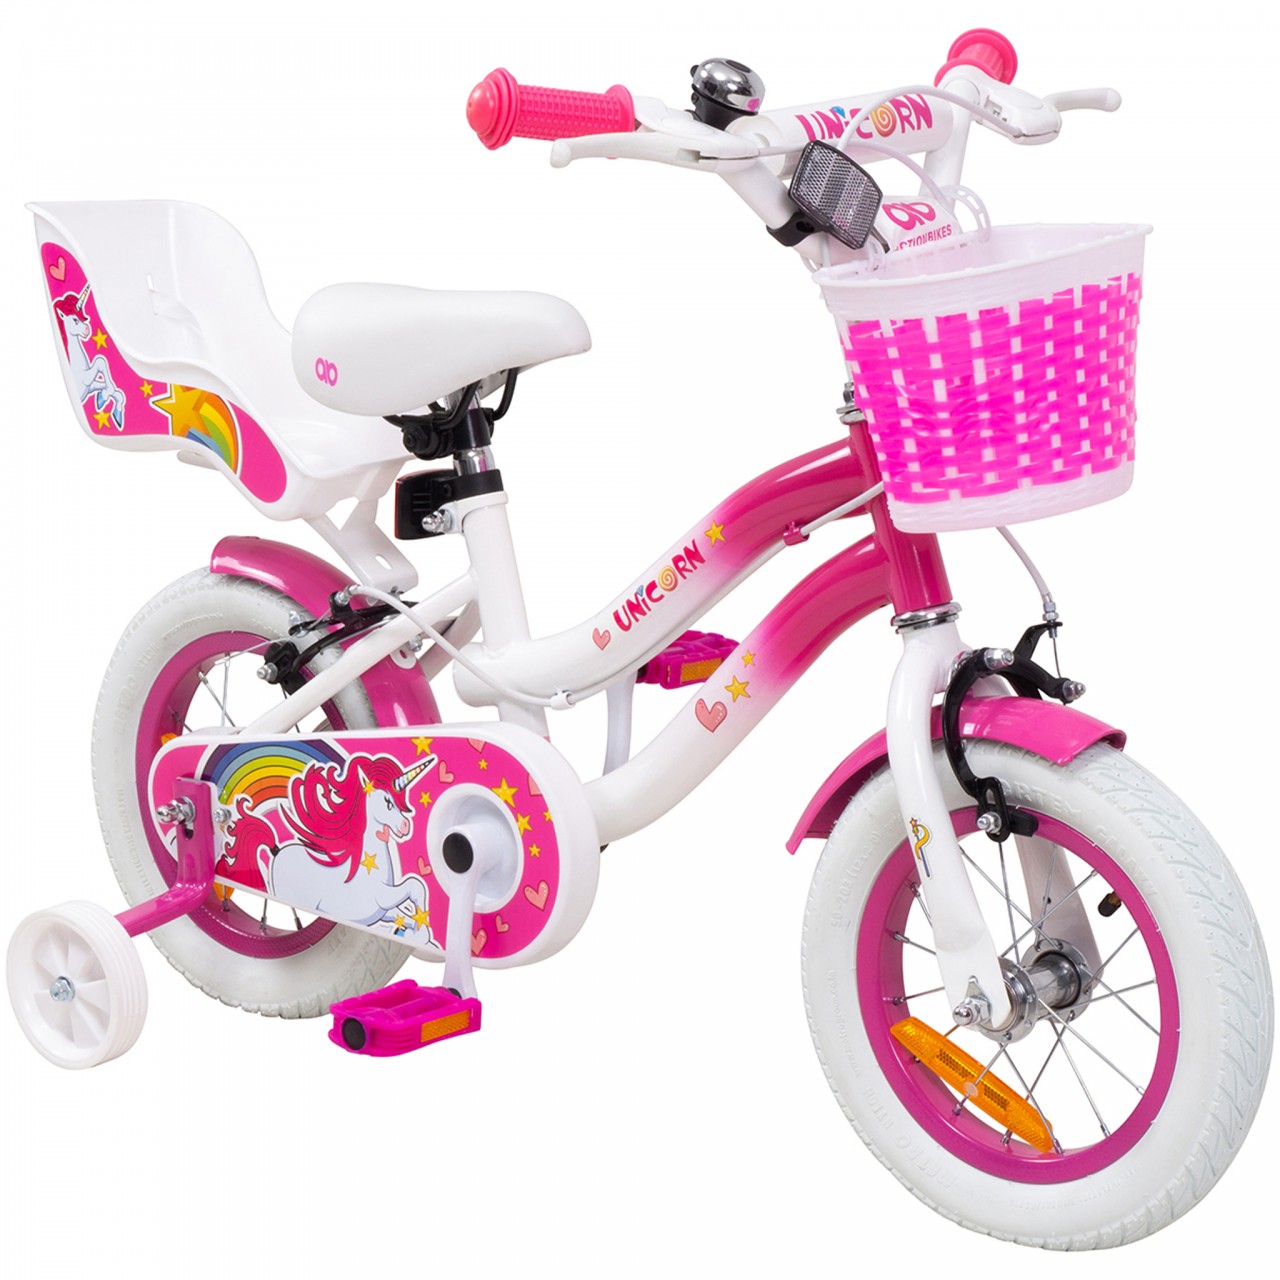 01-kinderfahrrad-12-zoll-weiss-pink-actionbikes-motors-unicorn-startbild